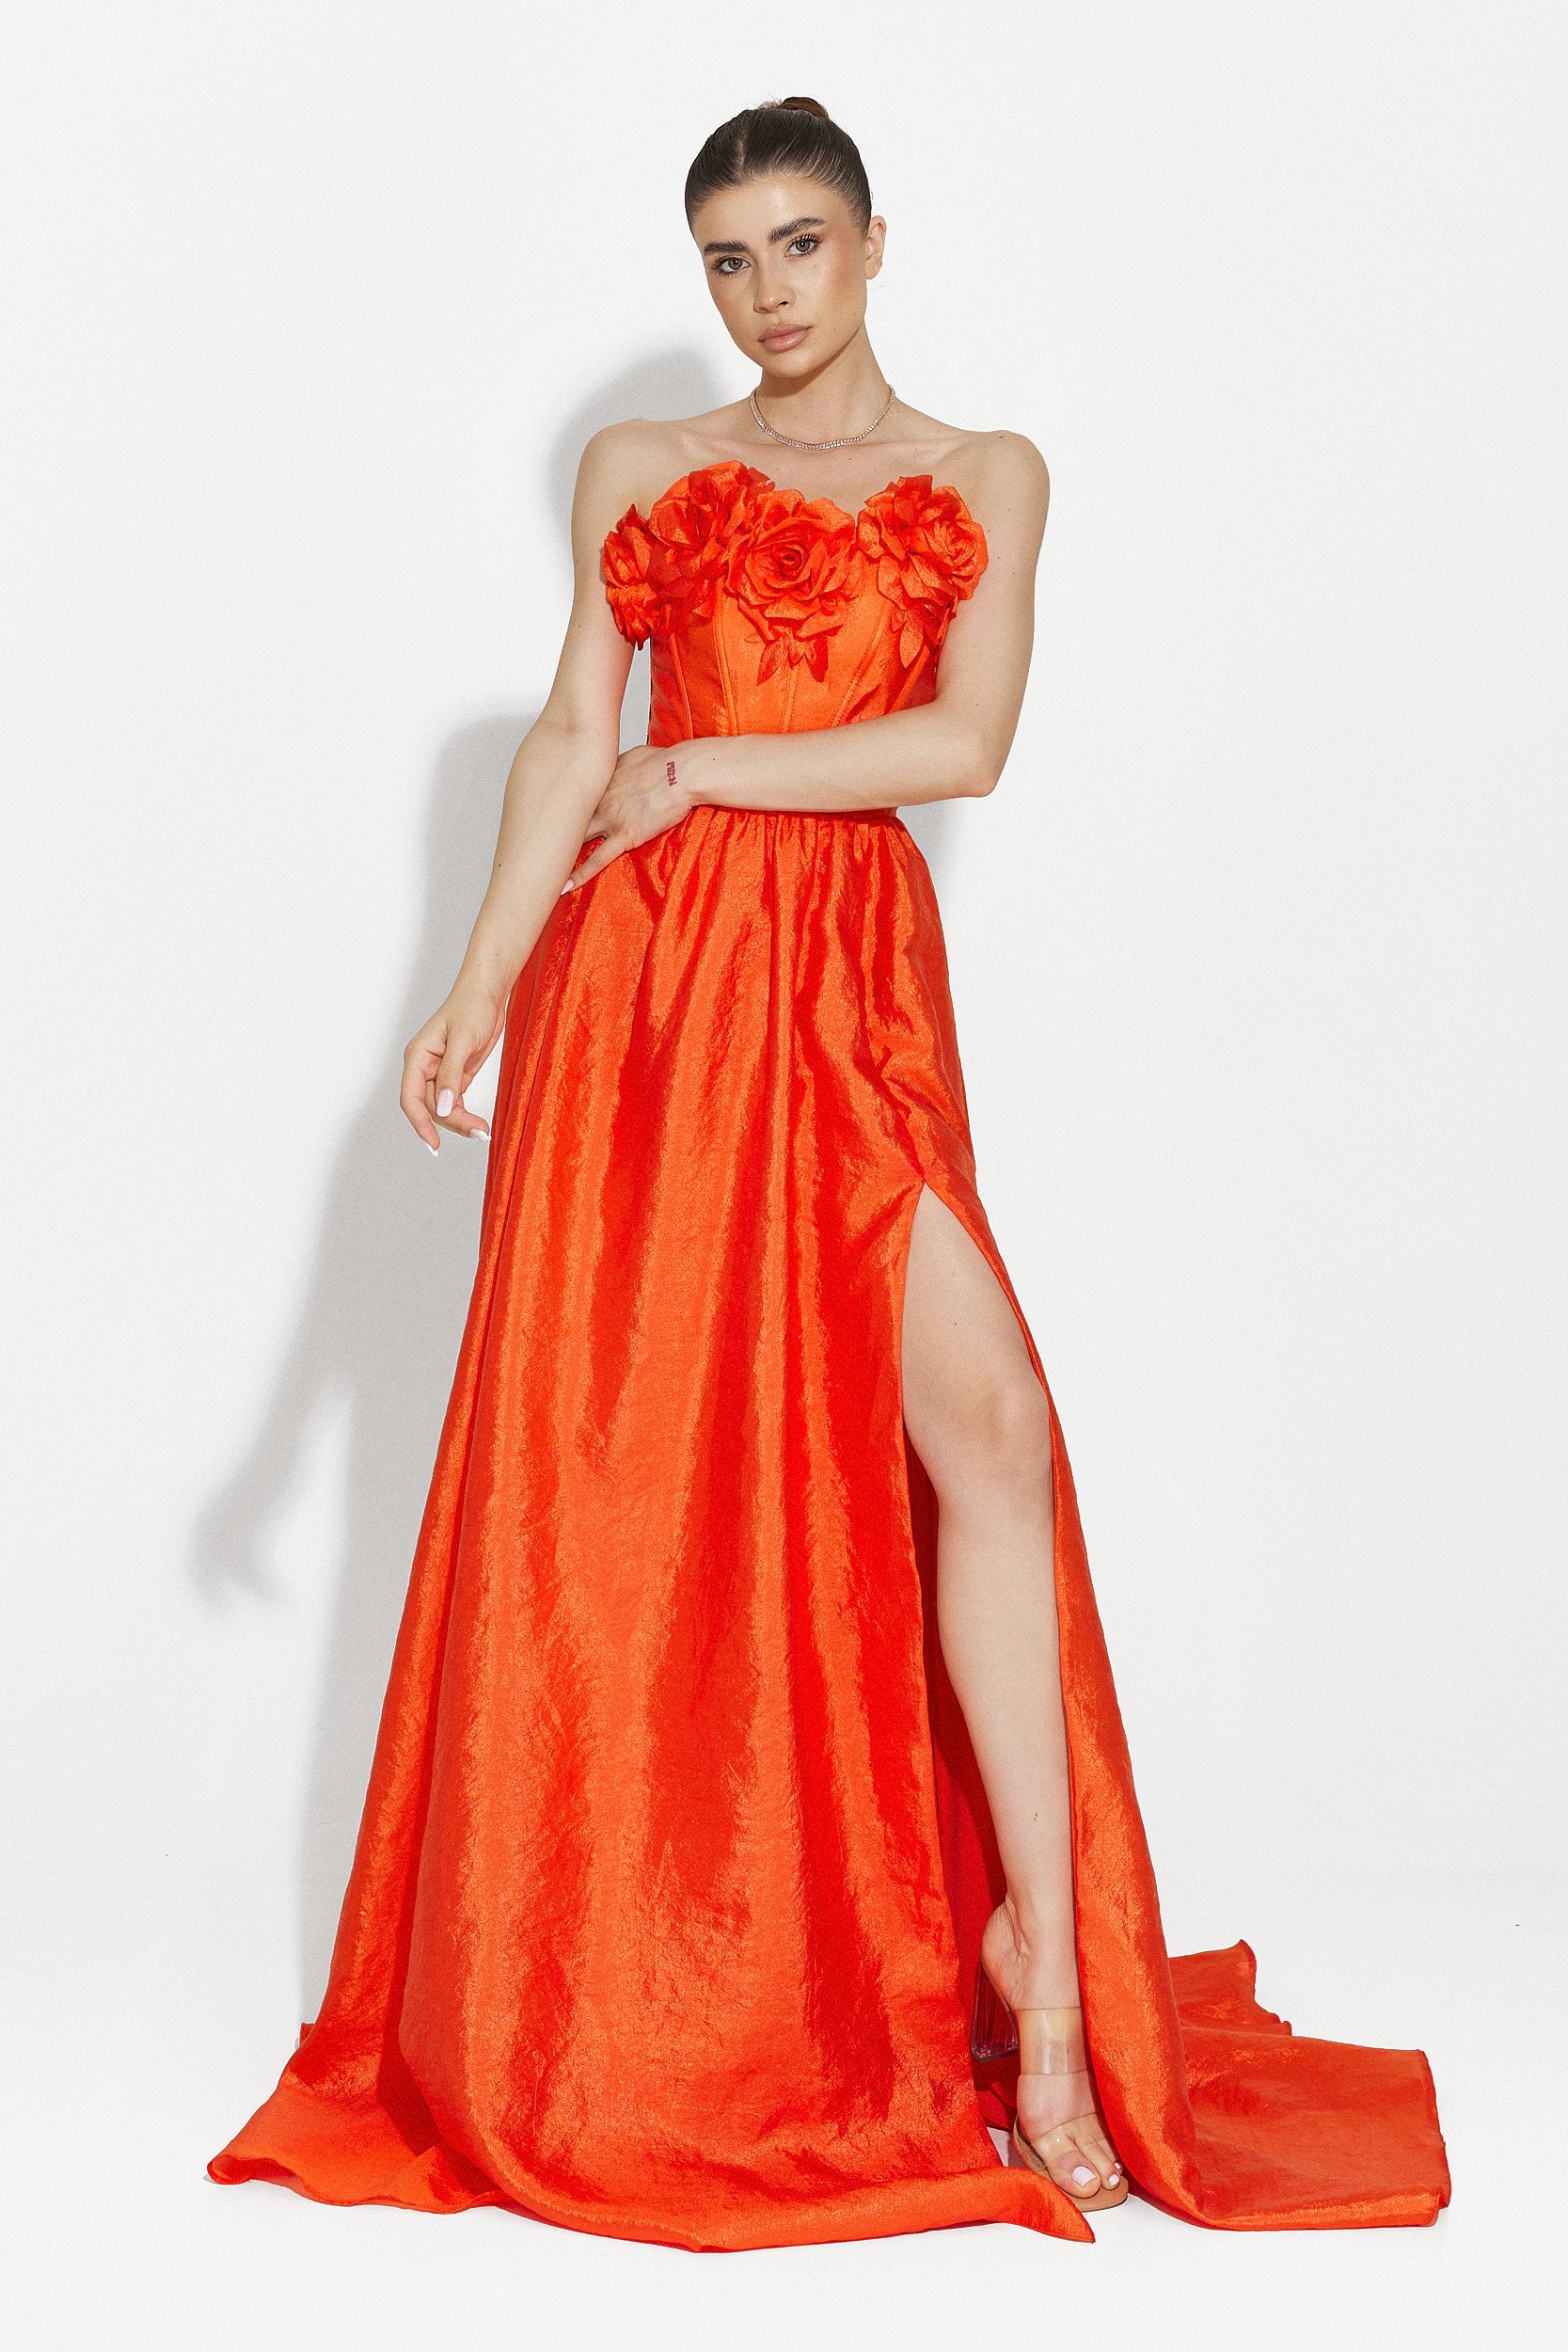 Ayana Bogas hosszú narancssárga női ruha